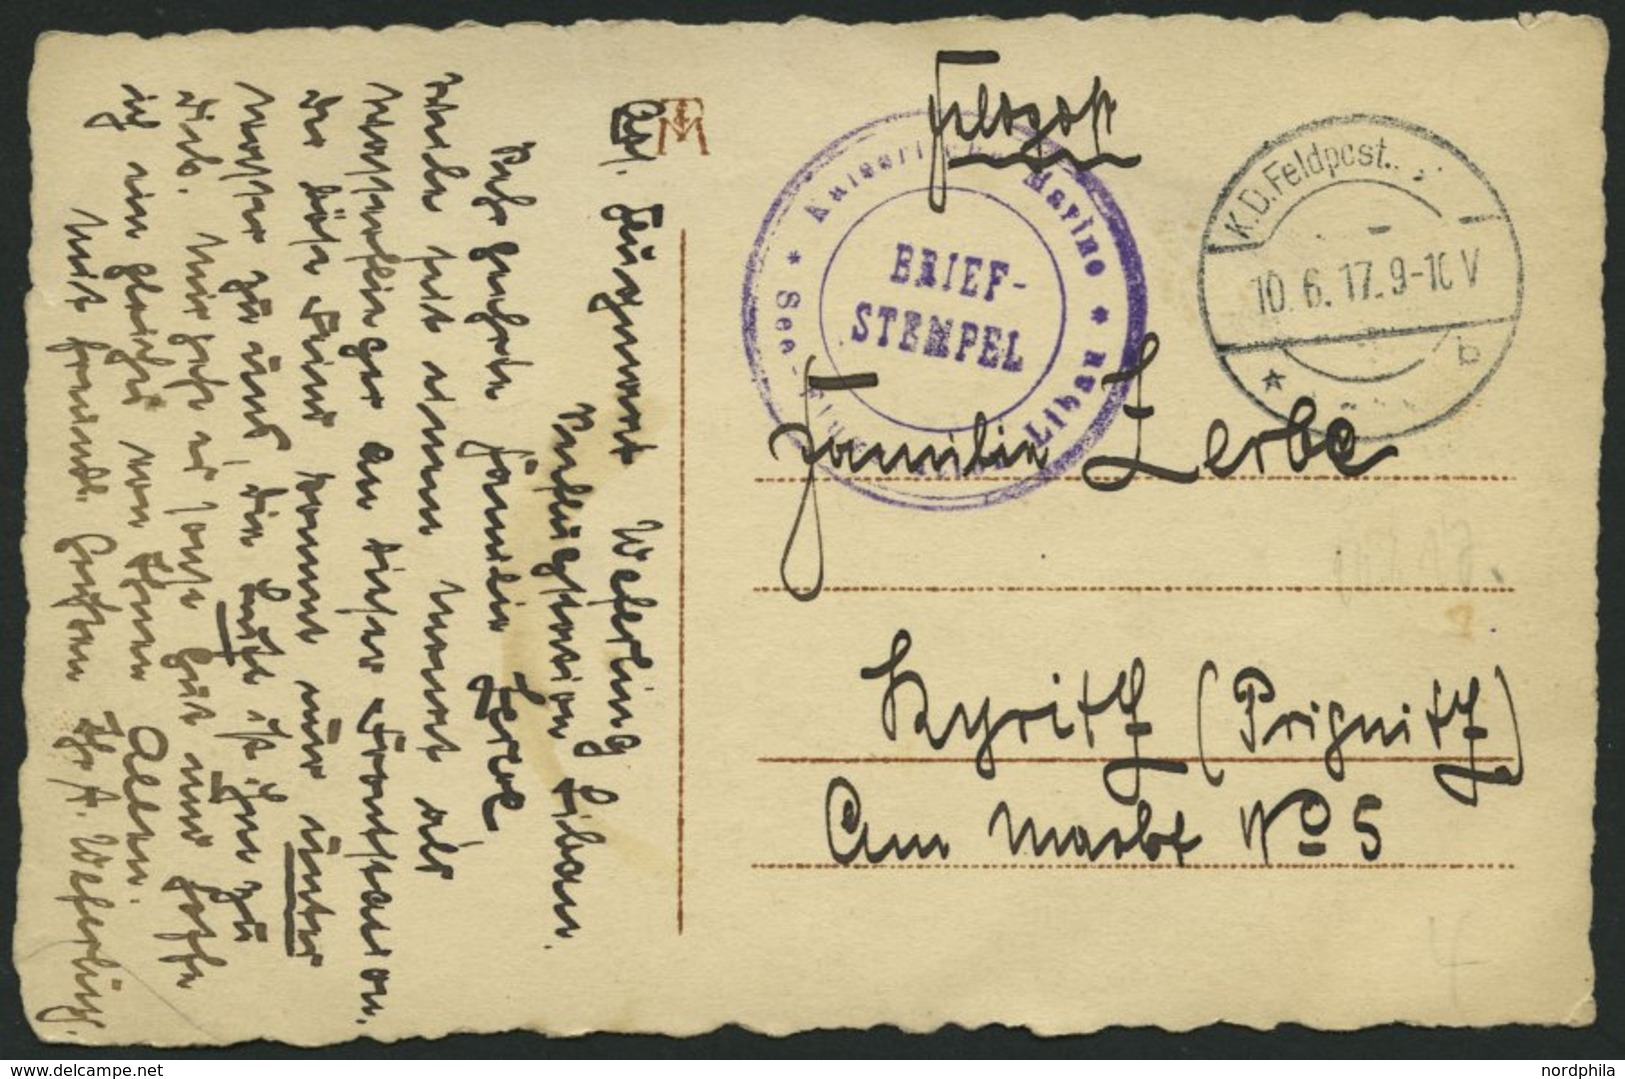 FELDPOST I.WK 1917, Feldpost-Ansichtskarte (Flieger Adolf Weferling) Mit Violettem Briefstempel KAISERLICHE MARINE - SEE - Gebruikt